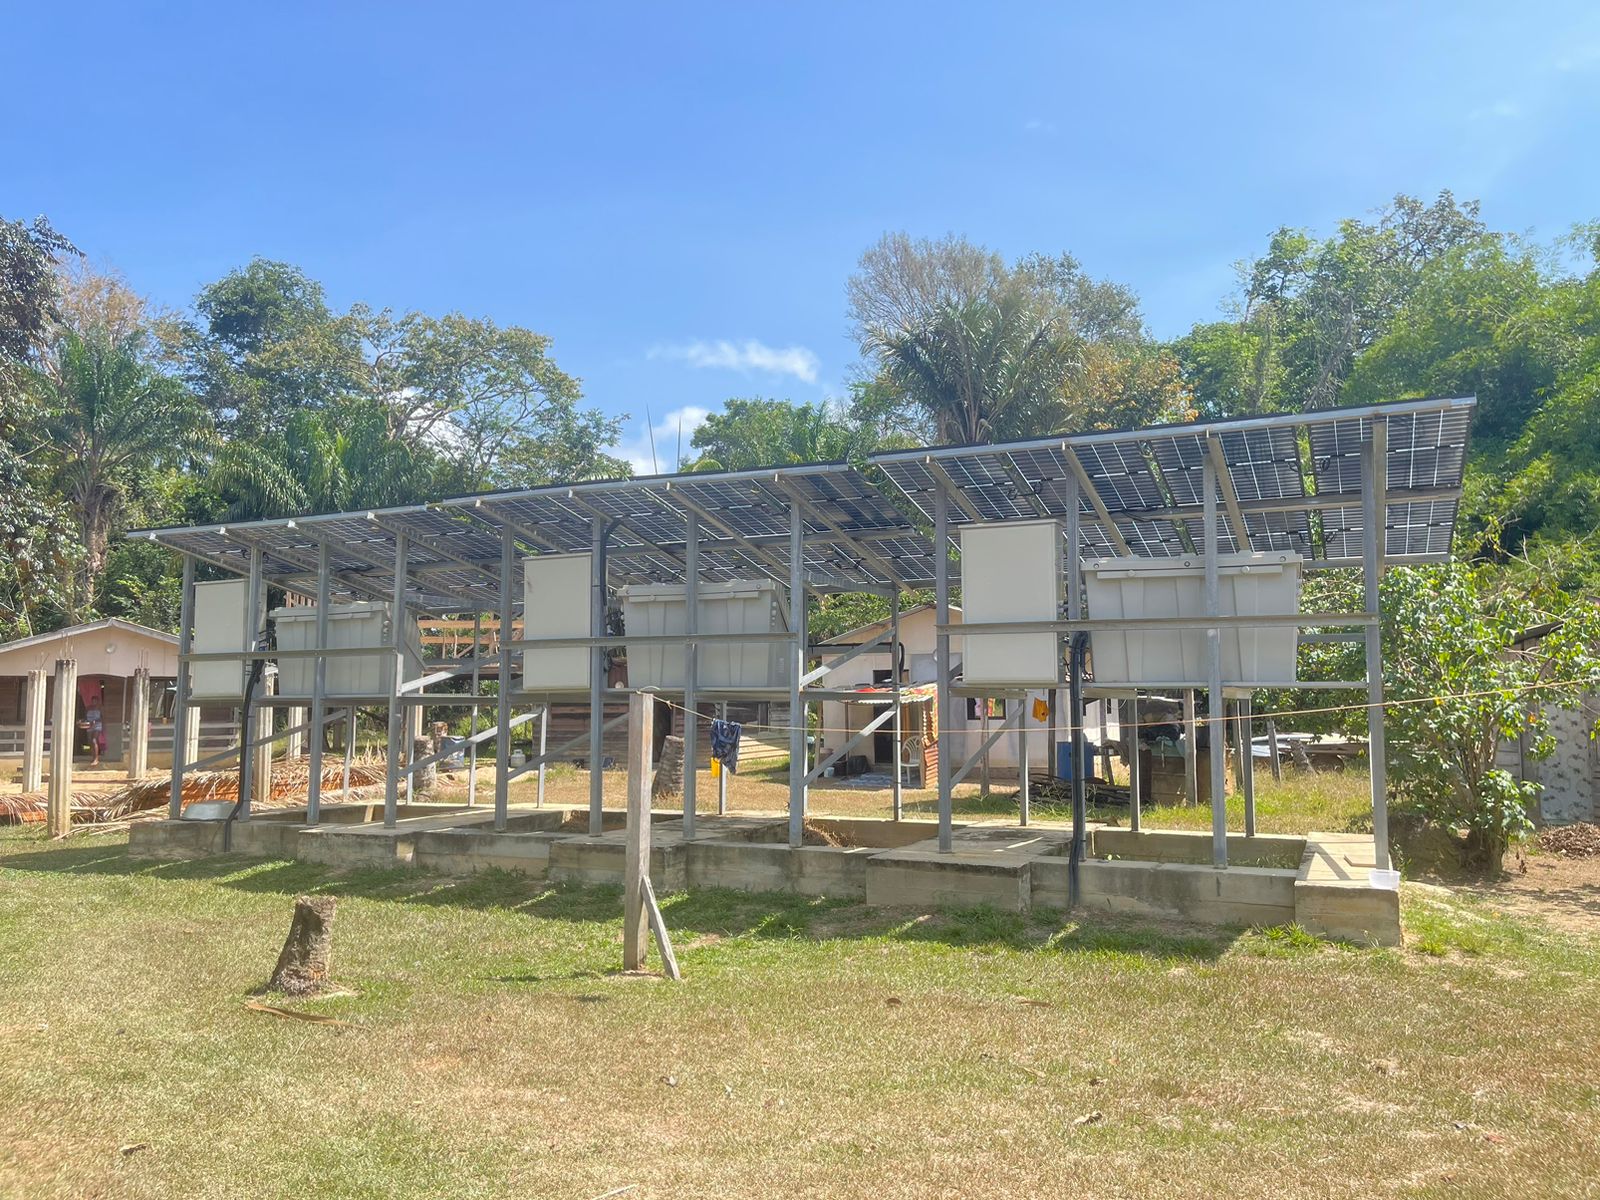 Les kits solaires de Koloupoté Kampu ont été inaugurés par la mairie